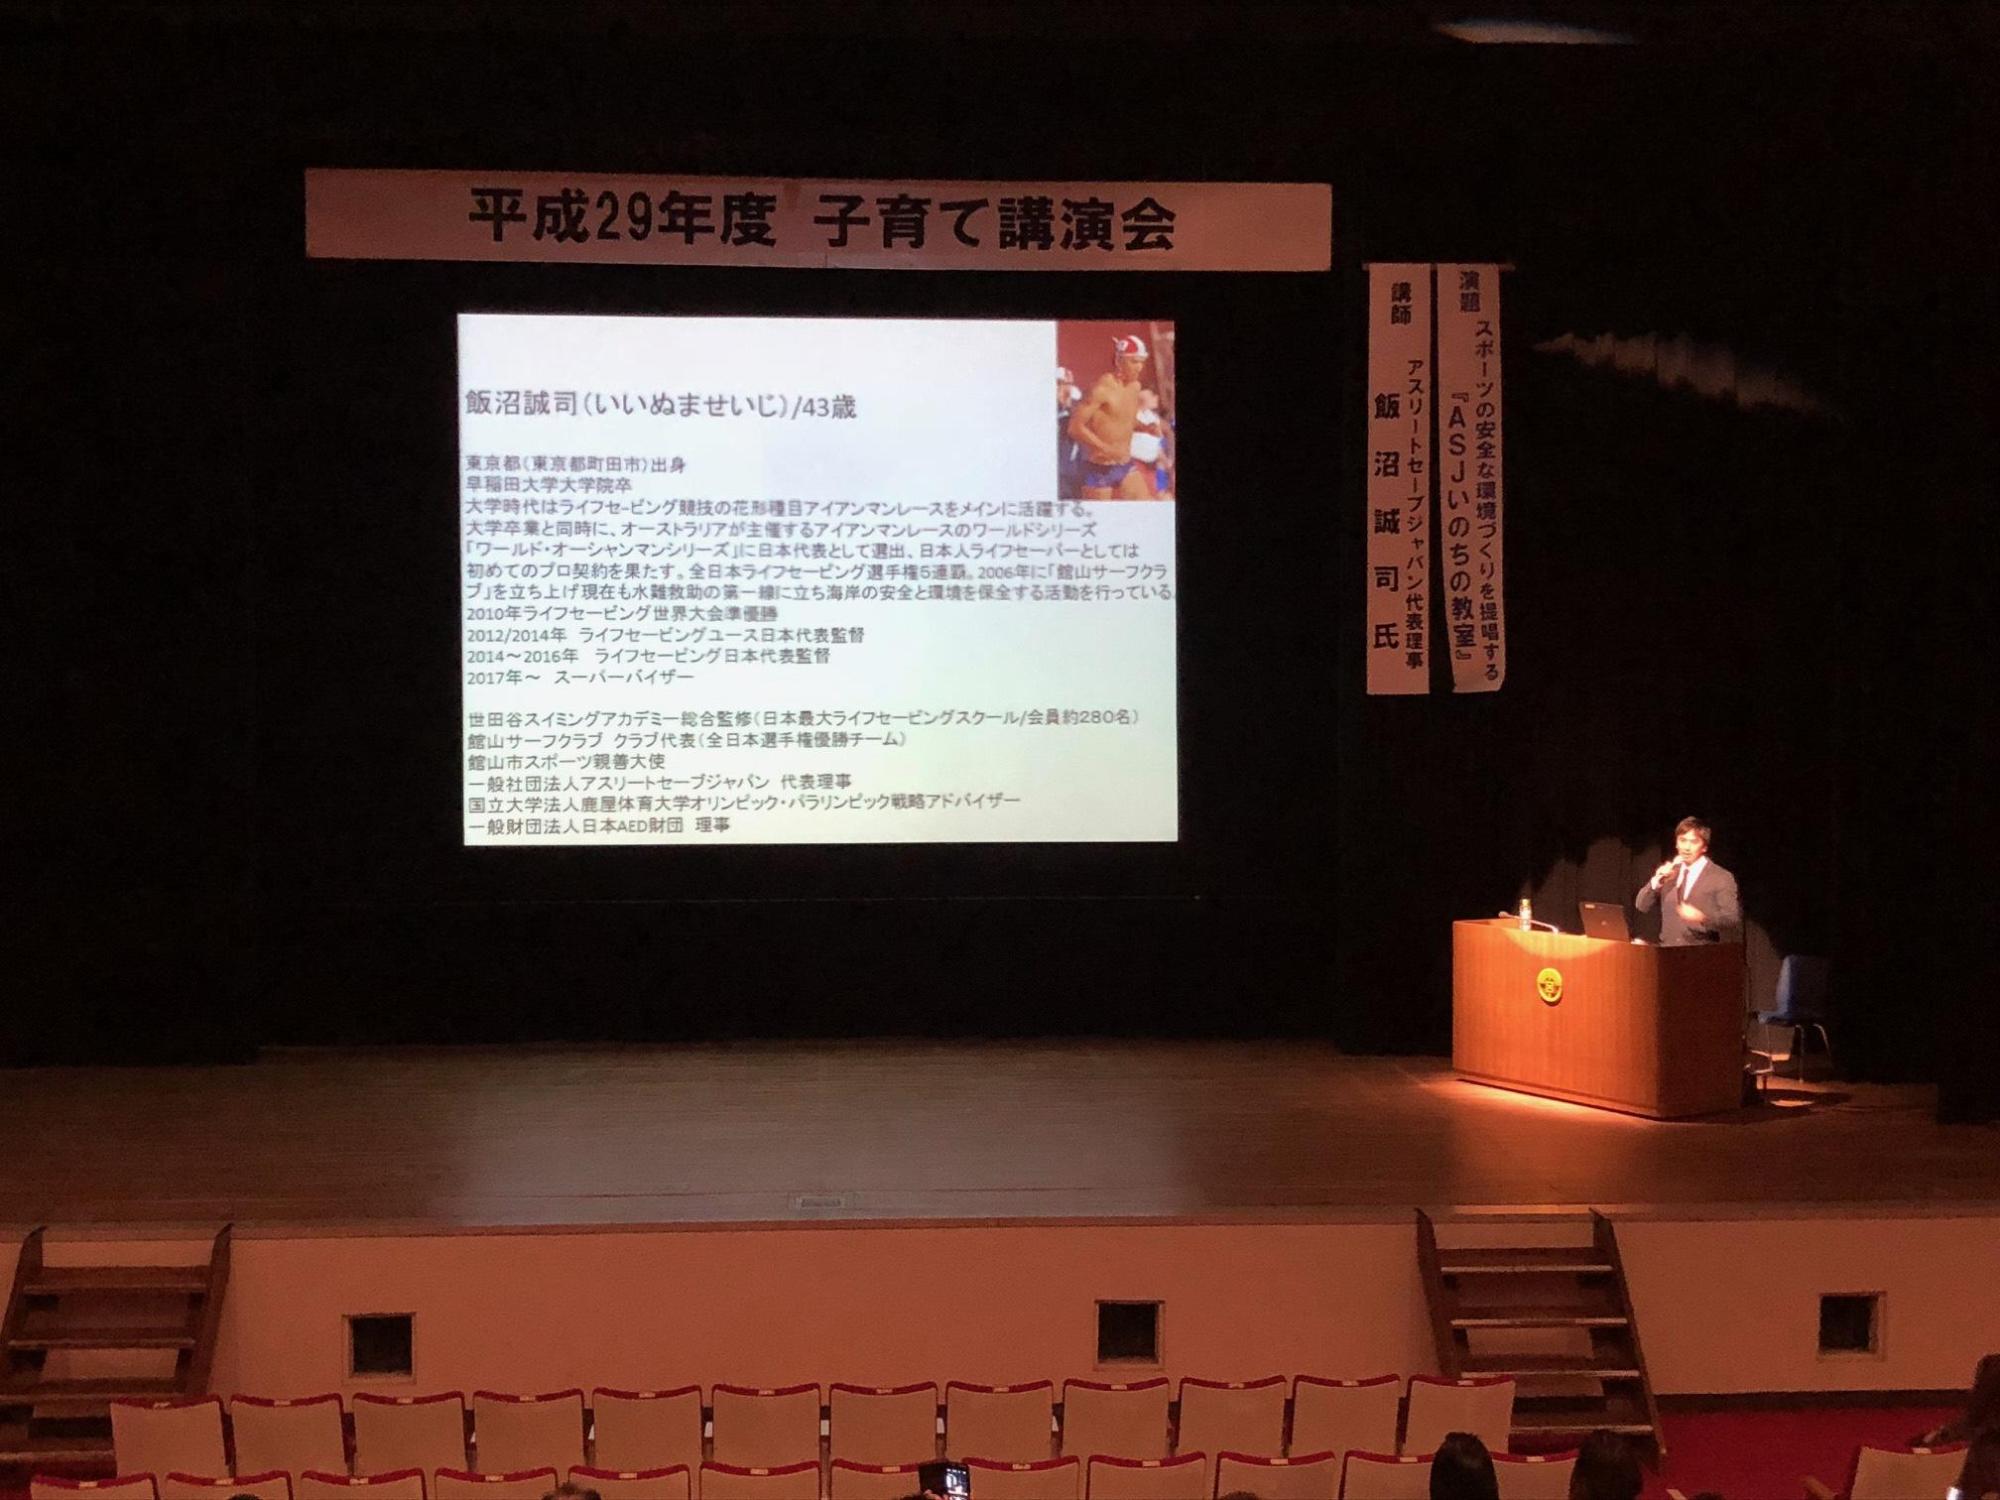 舞台上のスクリーンに映し出された講演会の資料と、舞台の右側で話をしている講師の写真